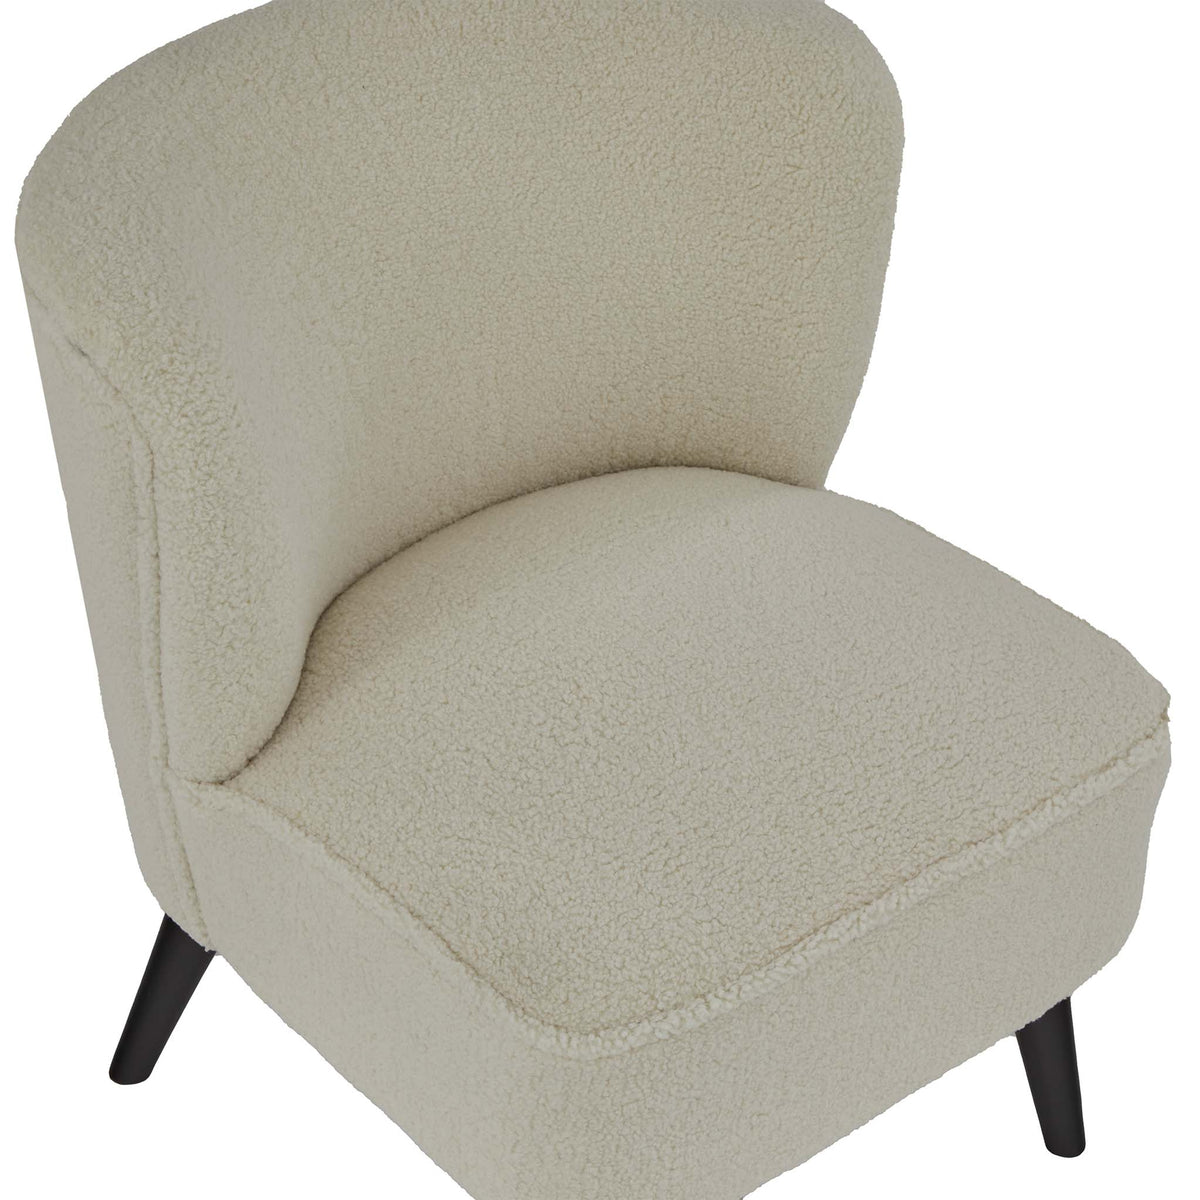 Malmesbury Teddy Accent Chair - Natural